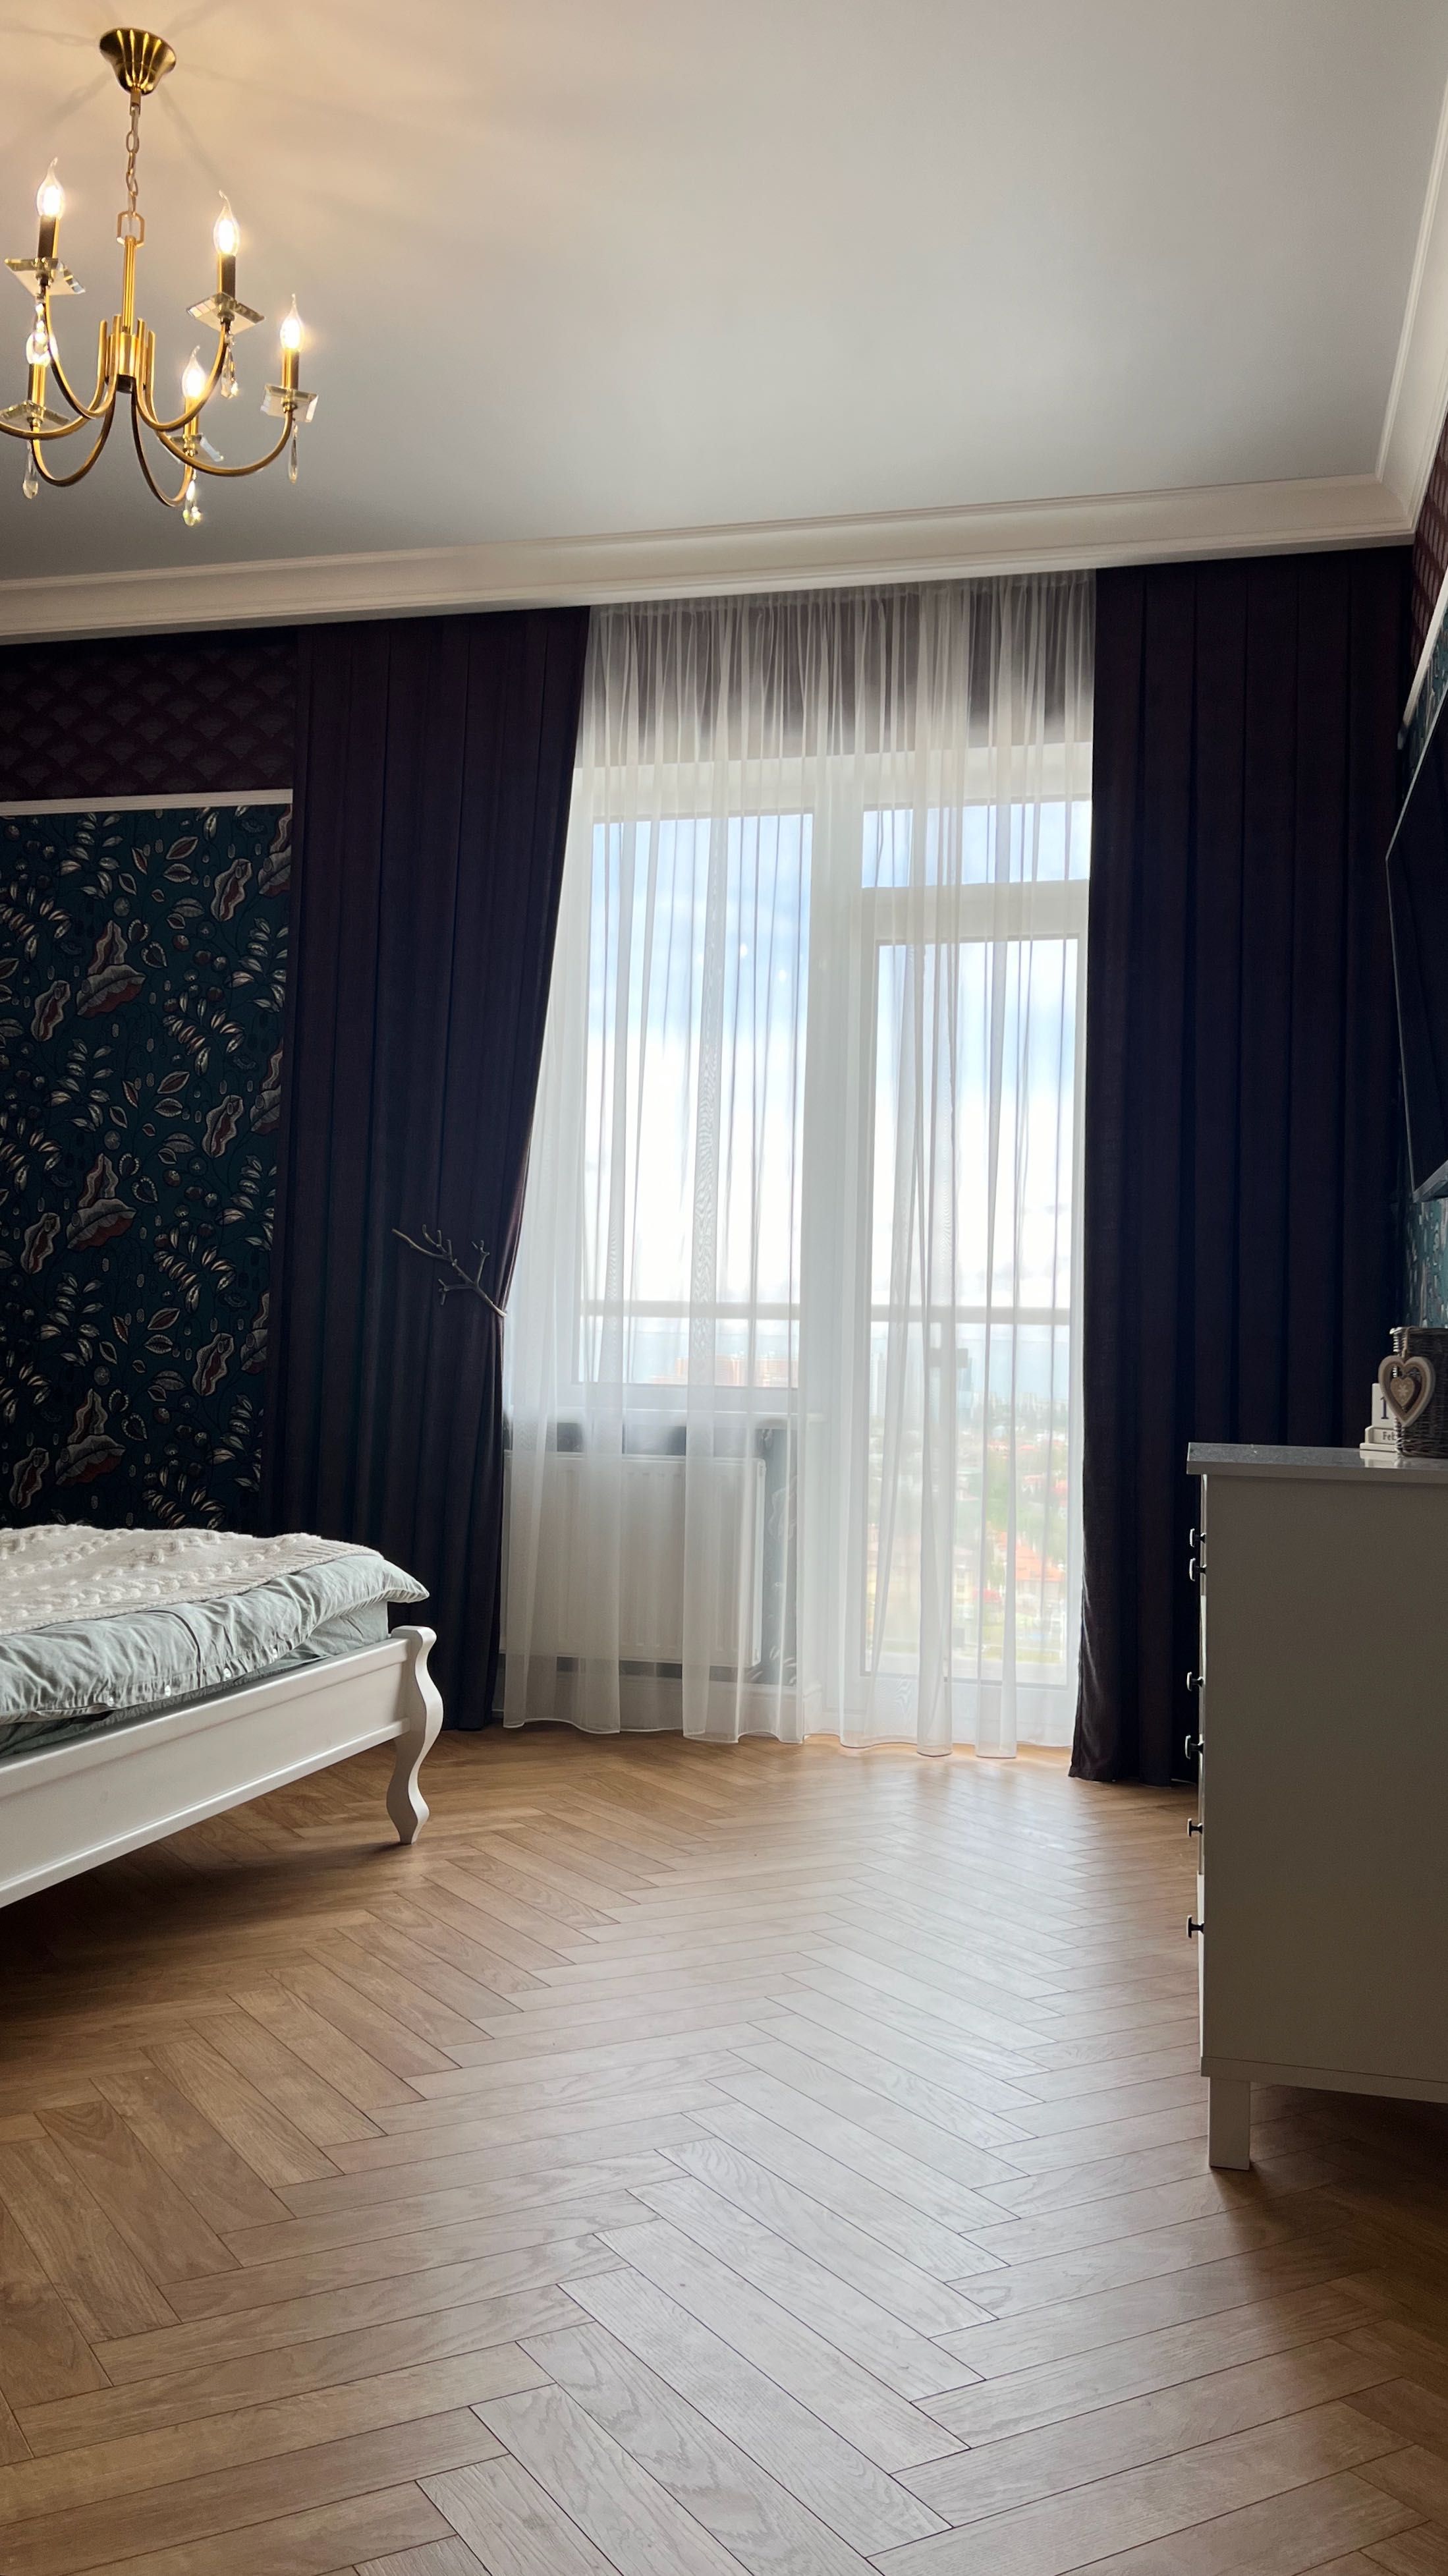 Аренда новой, красивой квартиры с двумя спальнями в ЖК Корфу.